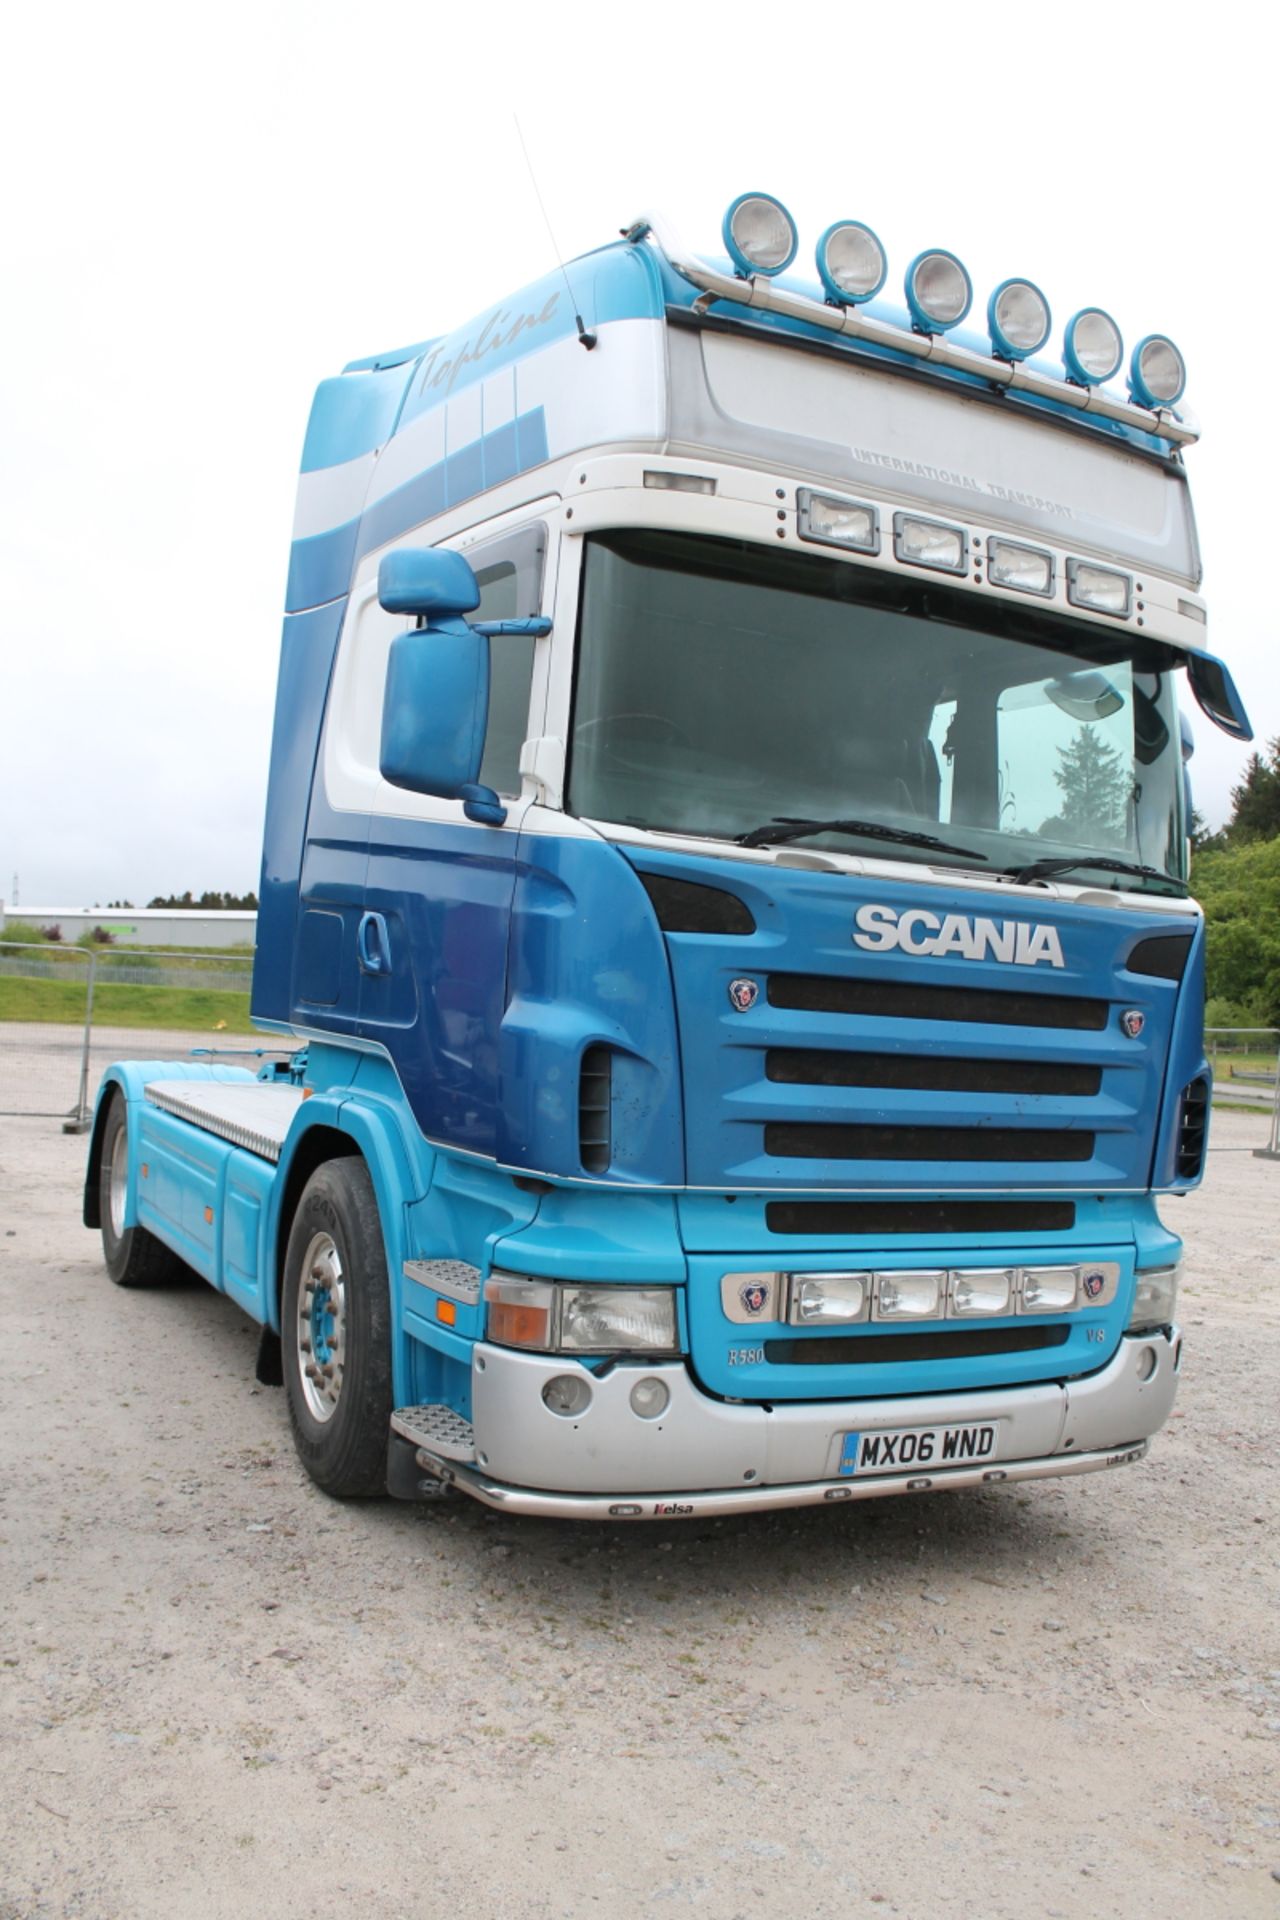 Scania R580 - 15607cc 2 Door Truck - Image 4 of 4